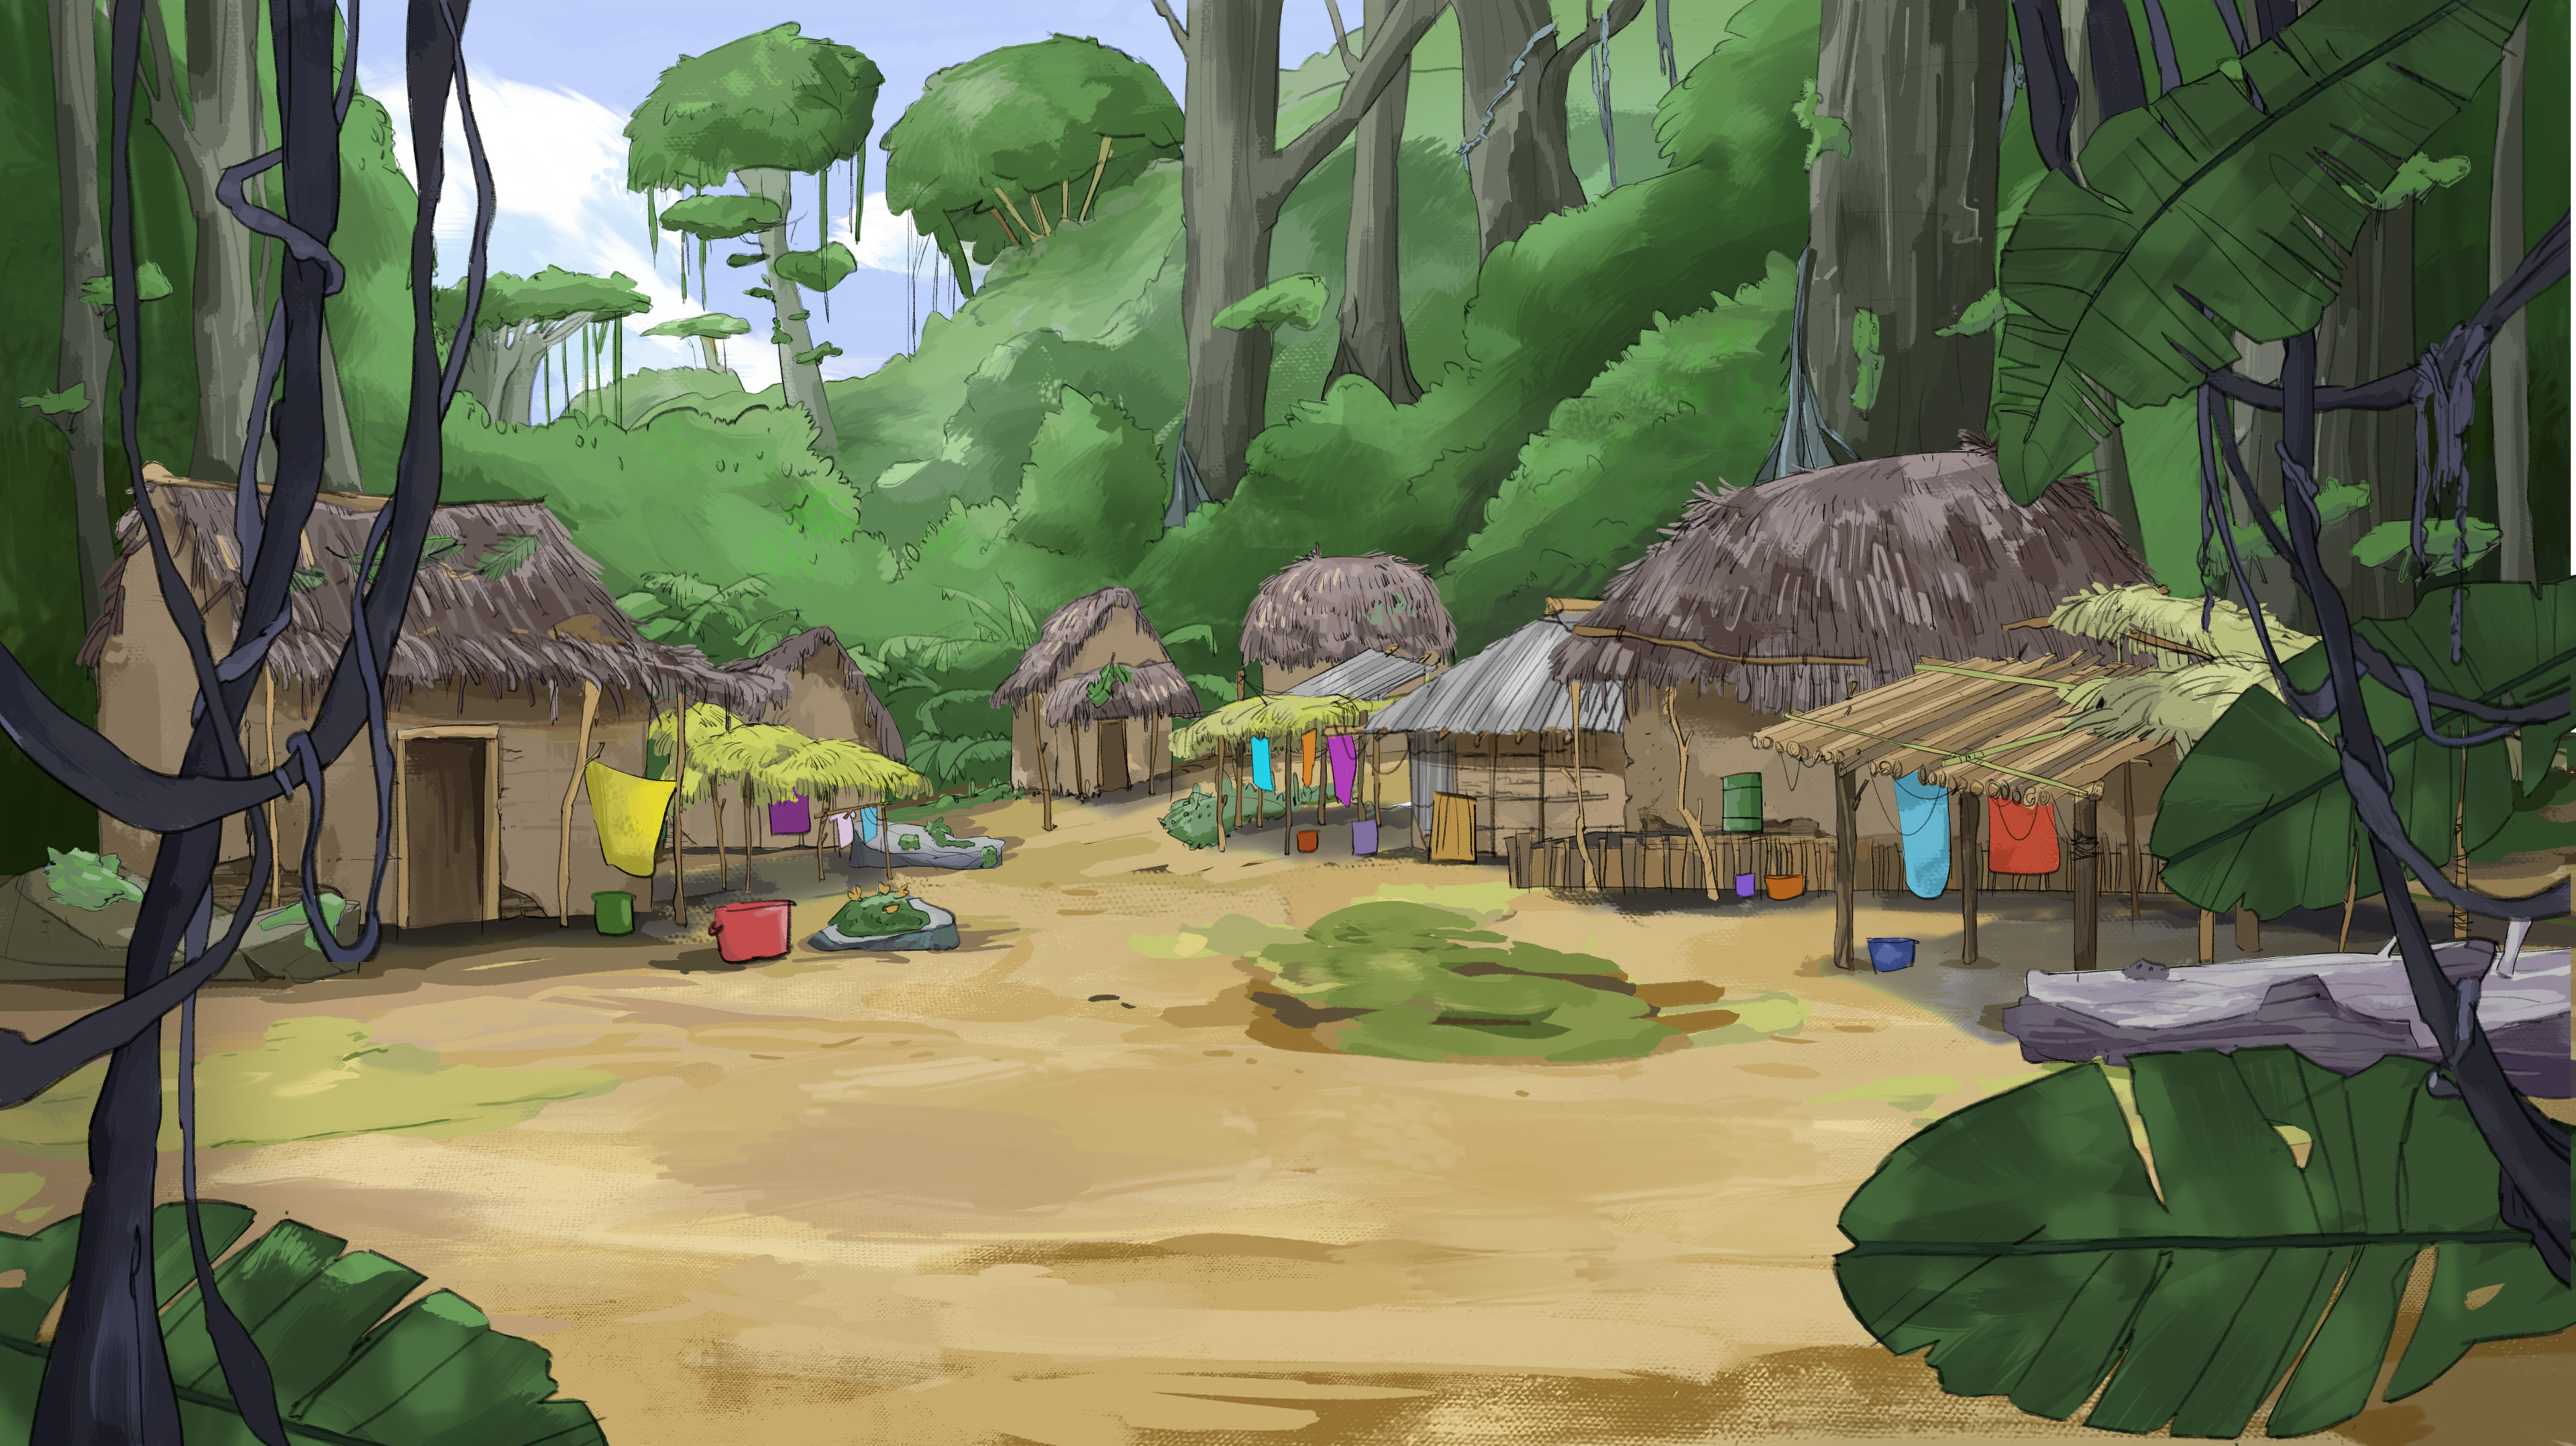 Village background design 